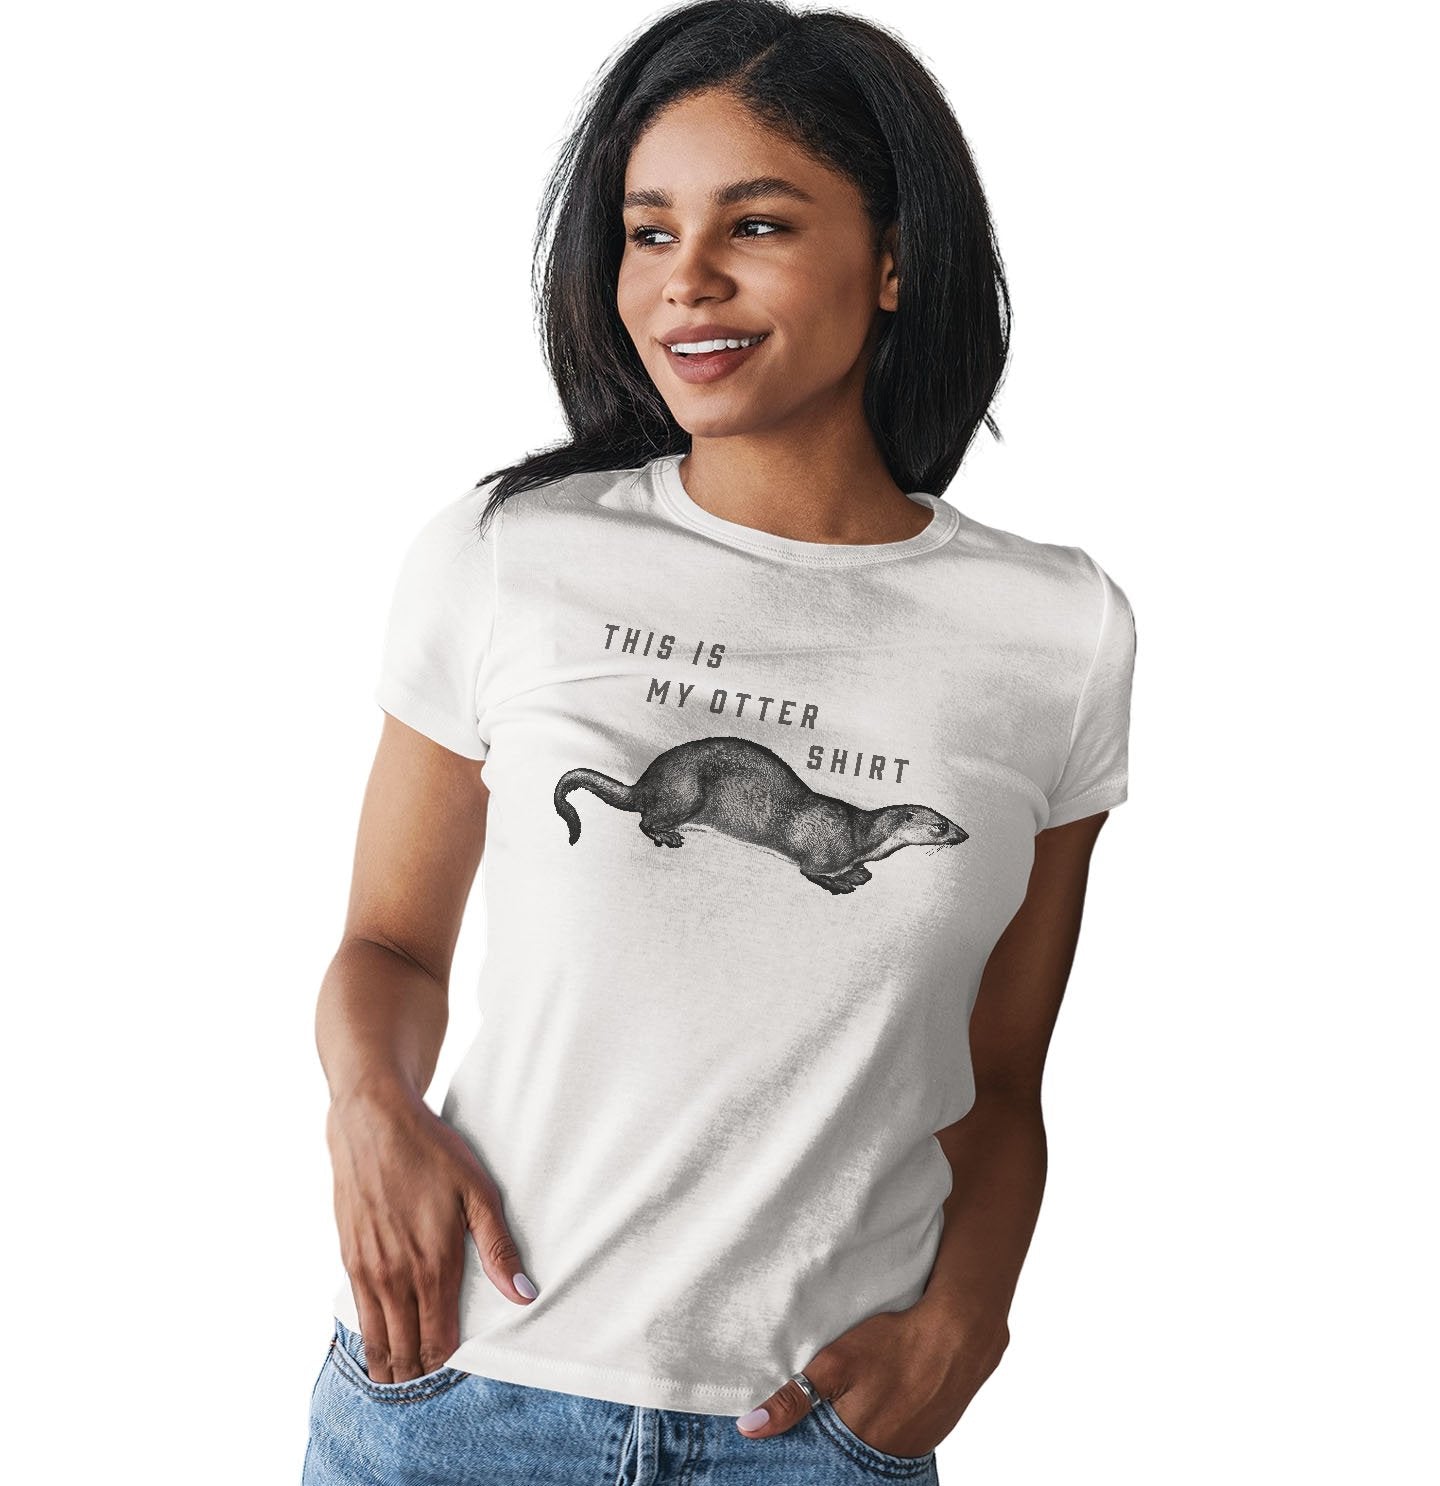 My Otter Shirt - Women's Fitted T-Shirt